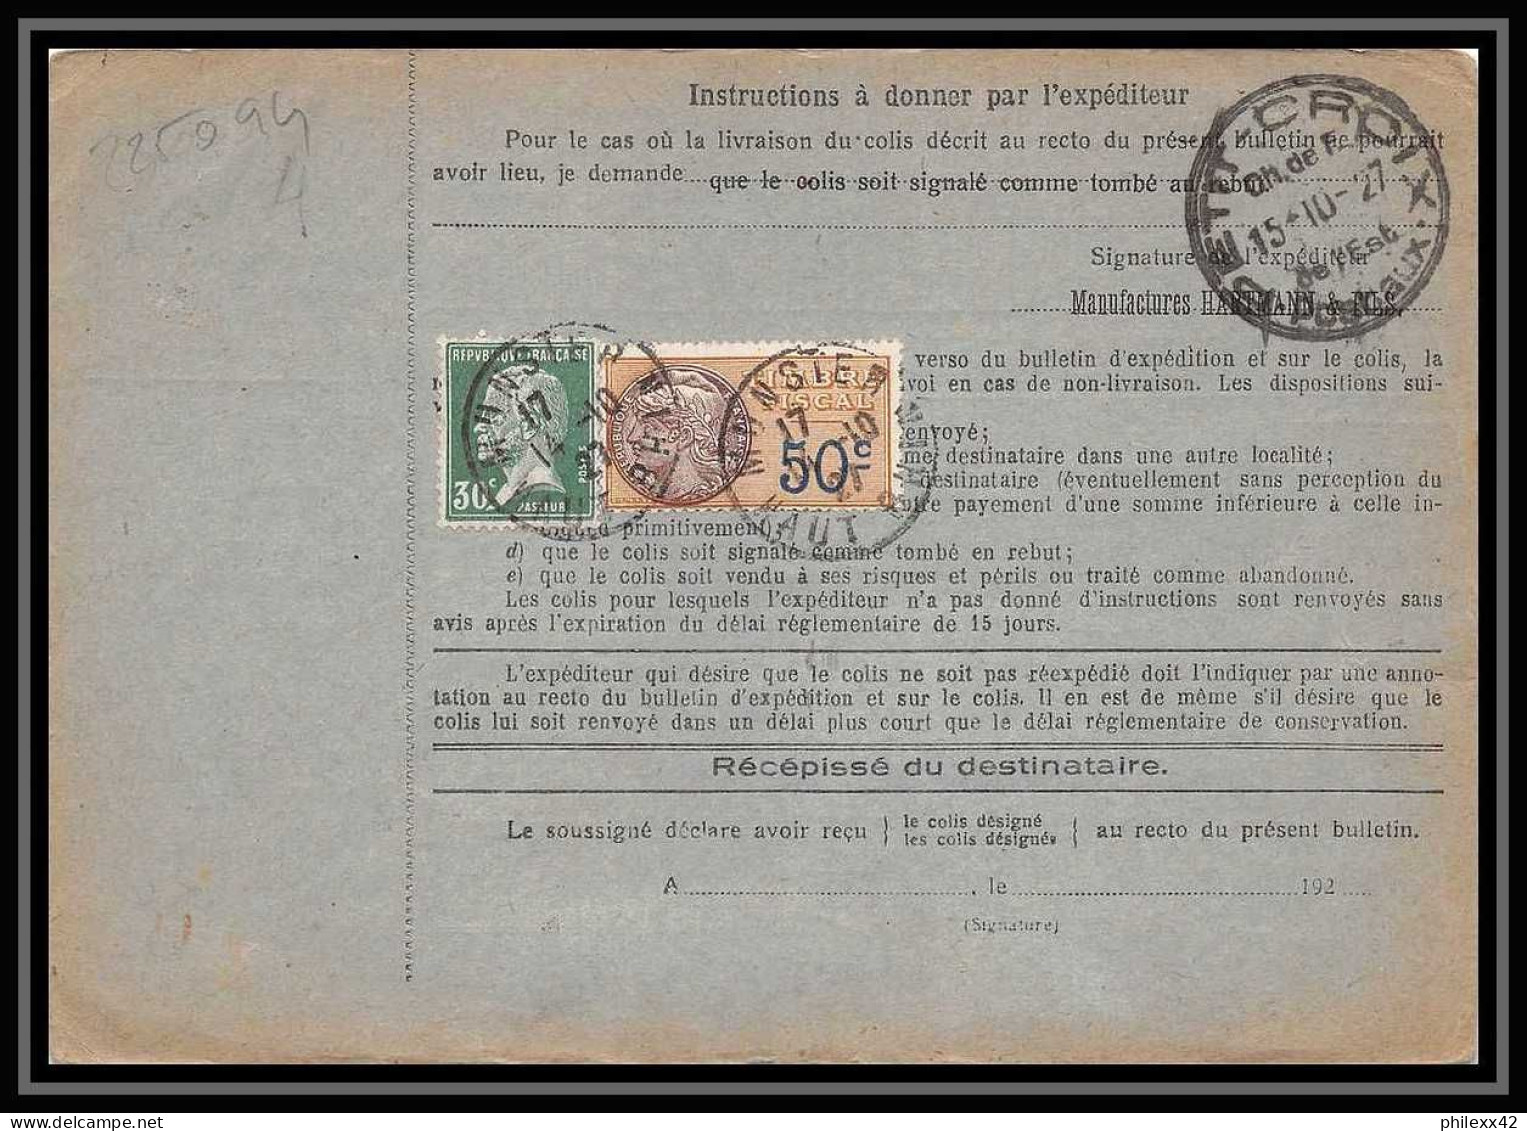 25094 Bulletin D'expédition France Colis Postaux Fiscal Haut Rhin - 1927 Munster Semeuse + Merson 123 Valeur Déclarée - Storia Postale